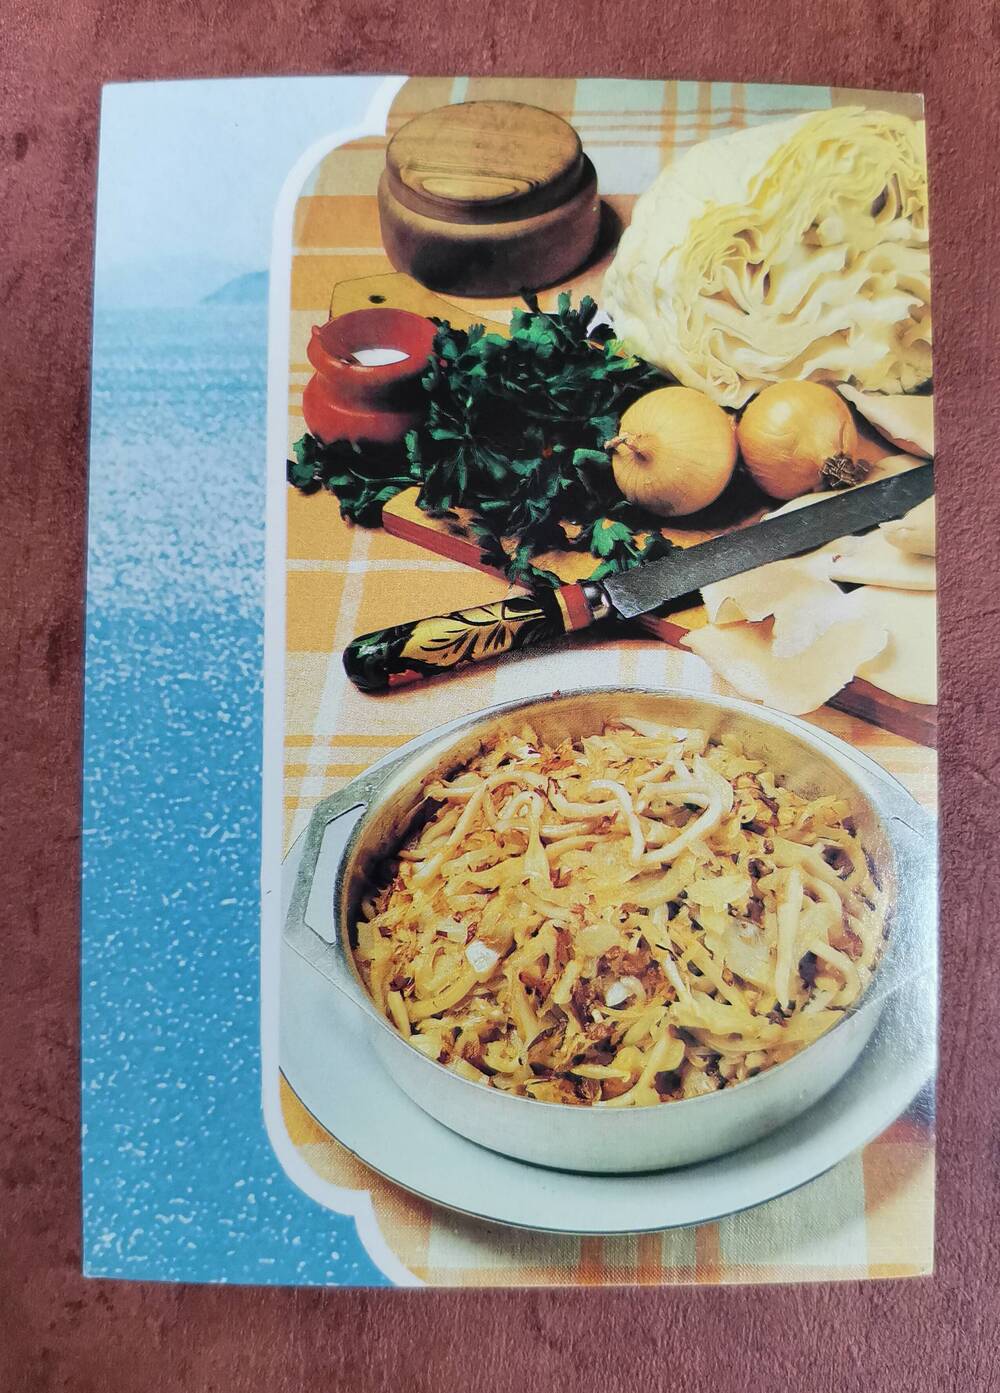 Открытка «Солянка по-дальневосточному». Из комплекта открыток «Советы хозяйкам. Блюда из рыбы».